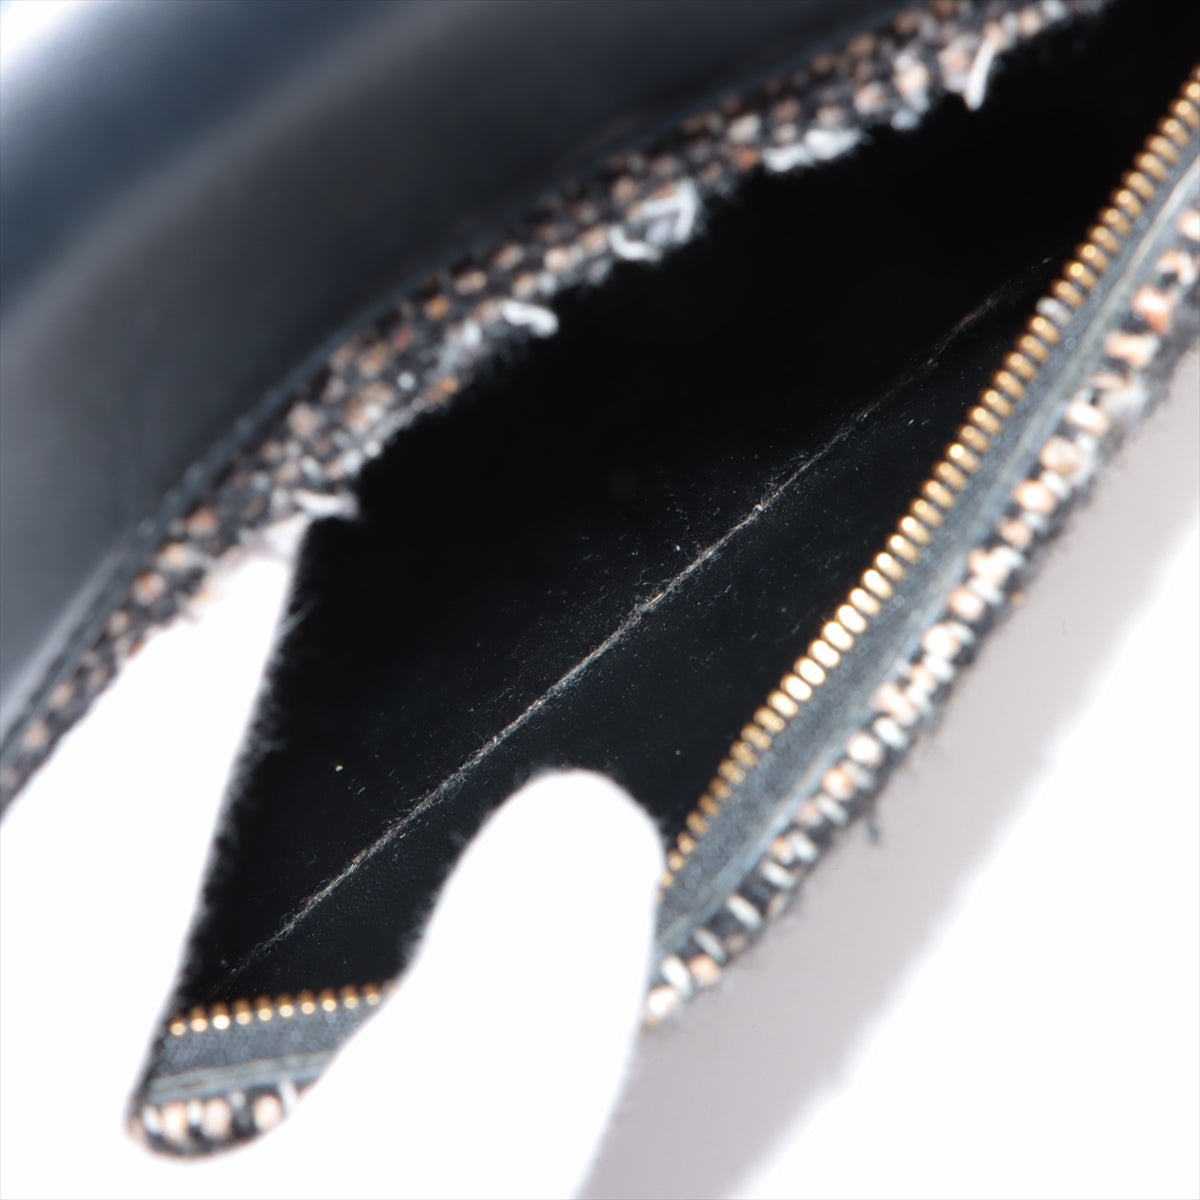 Celine Belt Bag Mini Tweed x Leather 2WAY Handbag Black